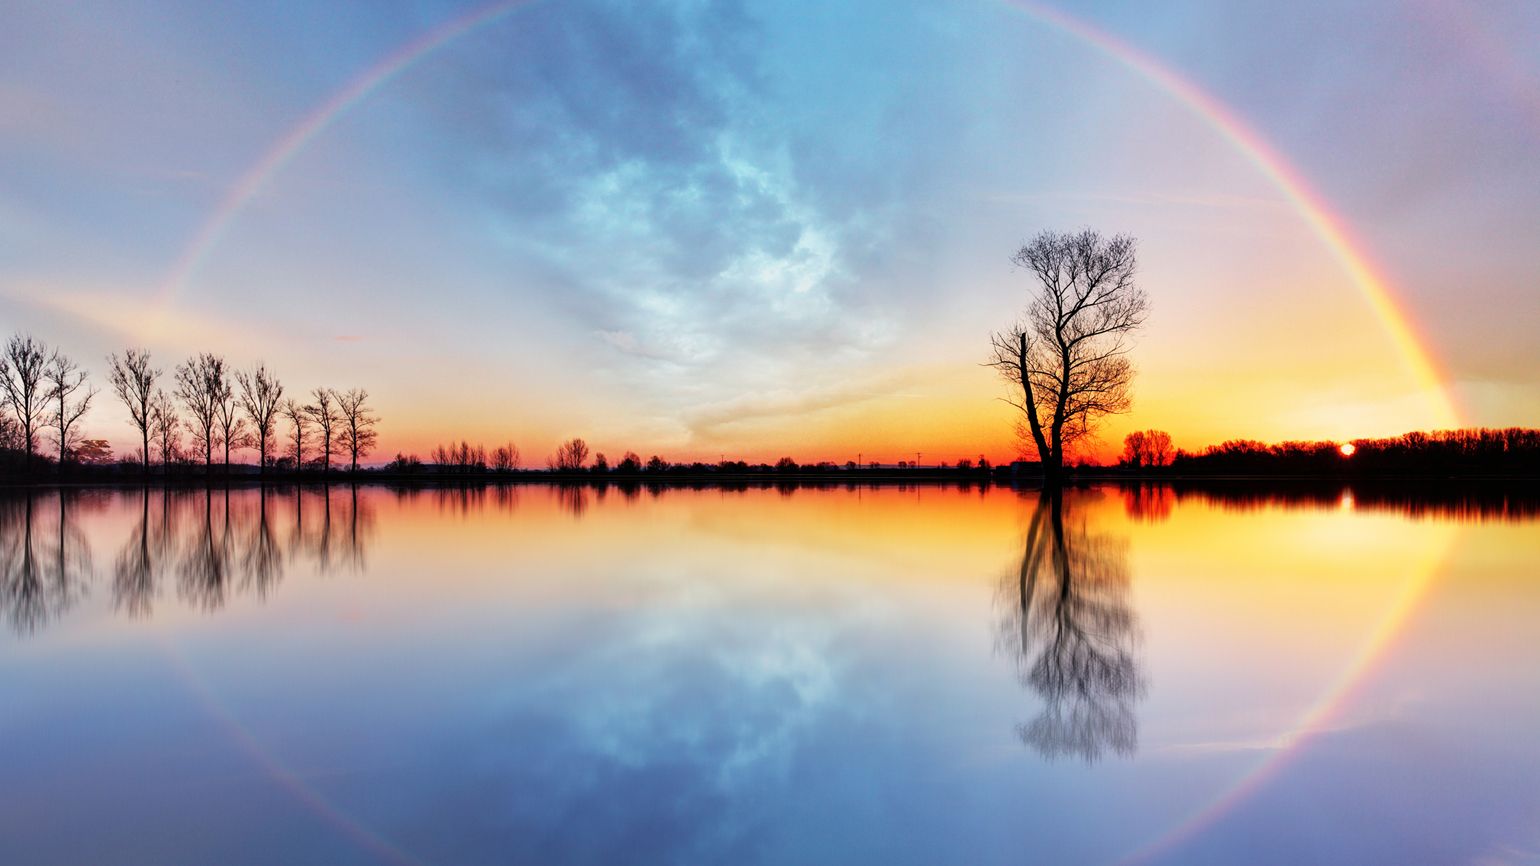 A rainbow against a brilliant sunset.